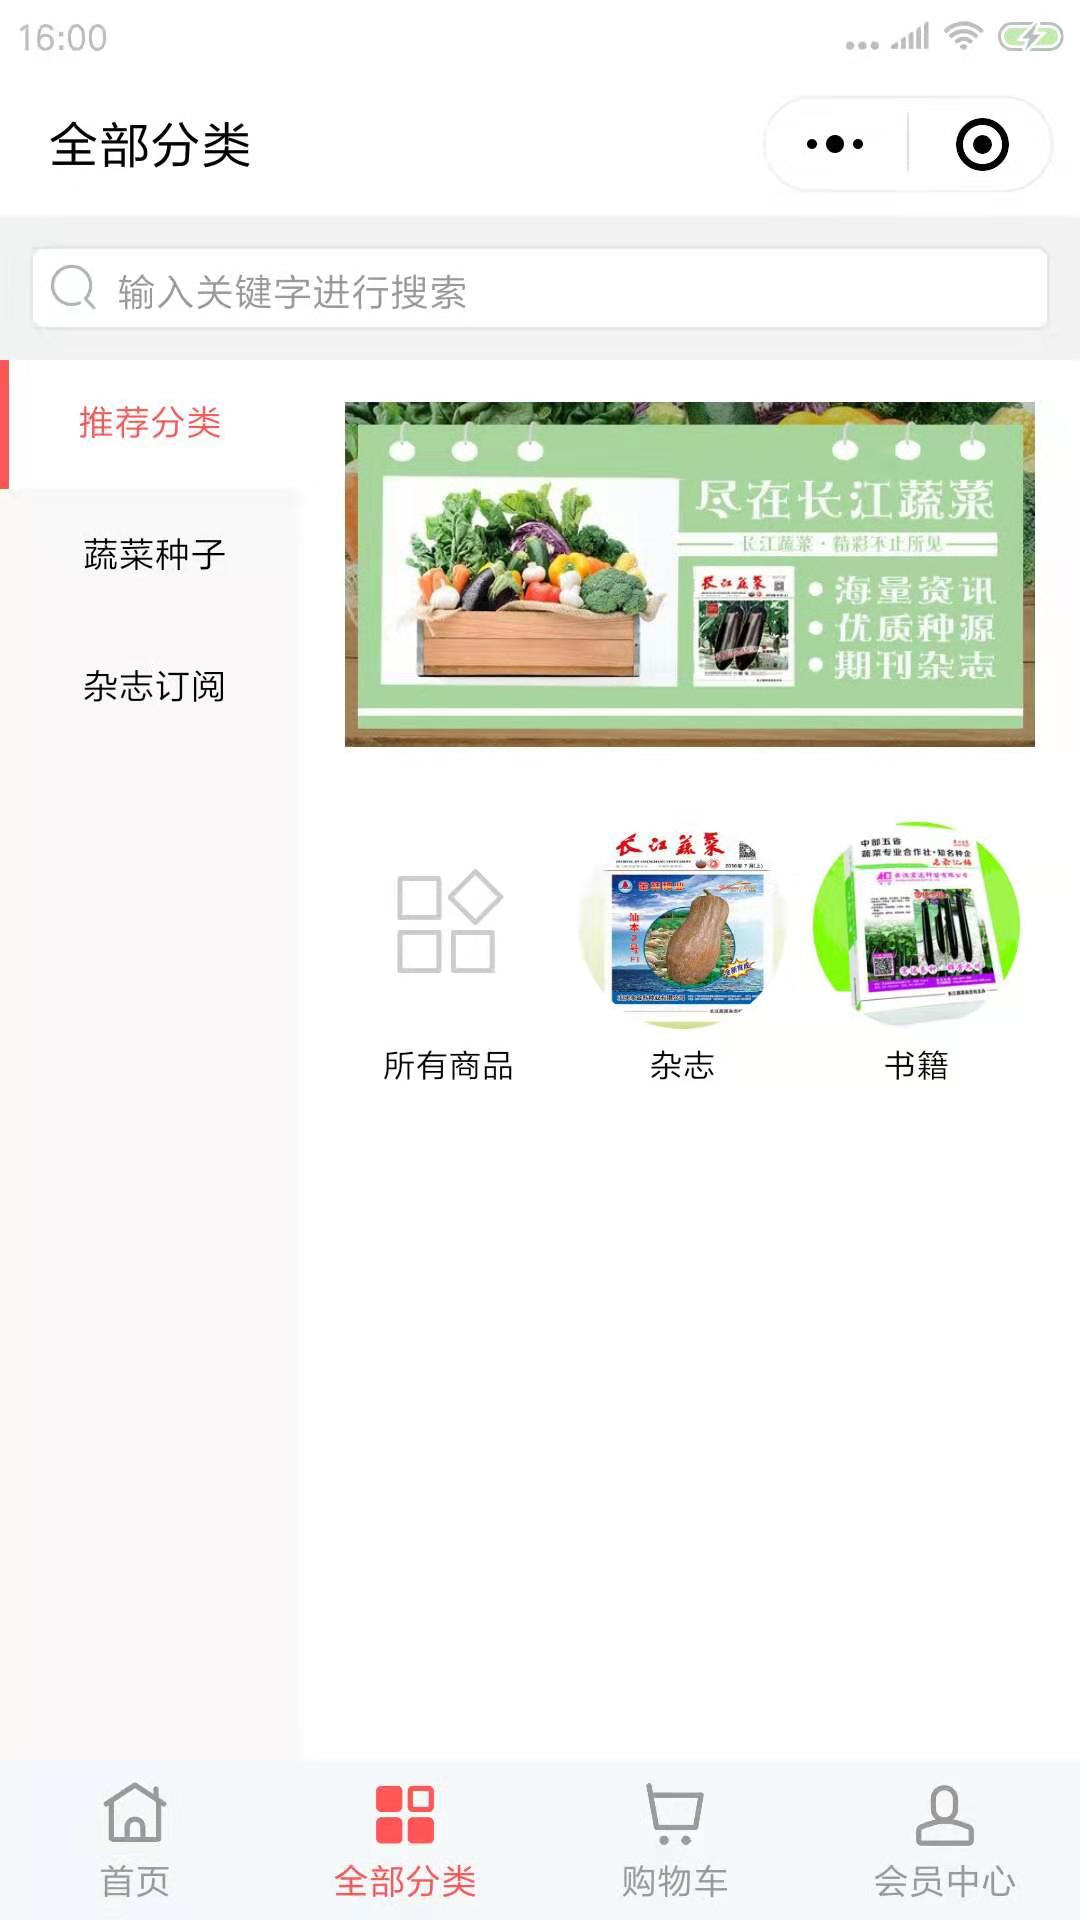 长江蔬菜商城_长江蔬菜商城小程序_长江蔬菜商城微信小程序